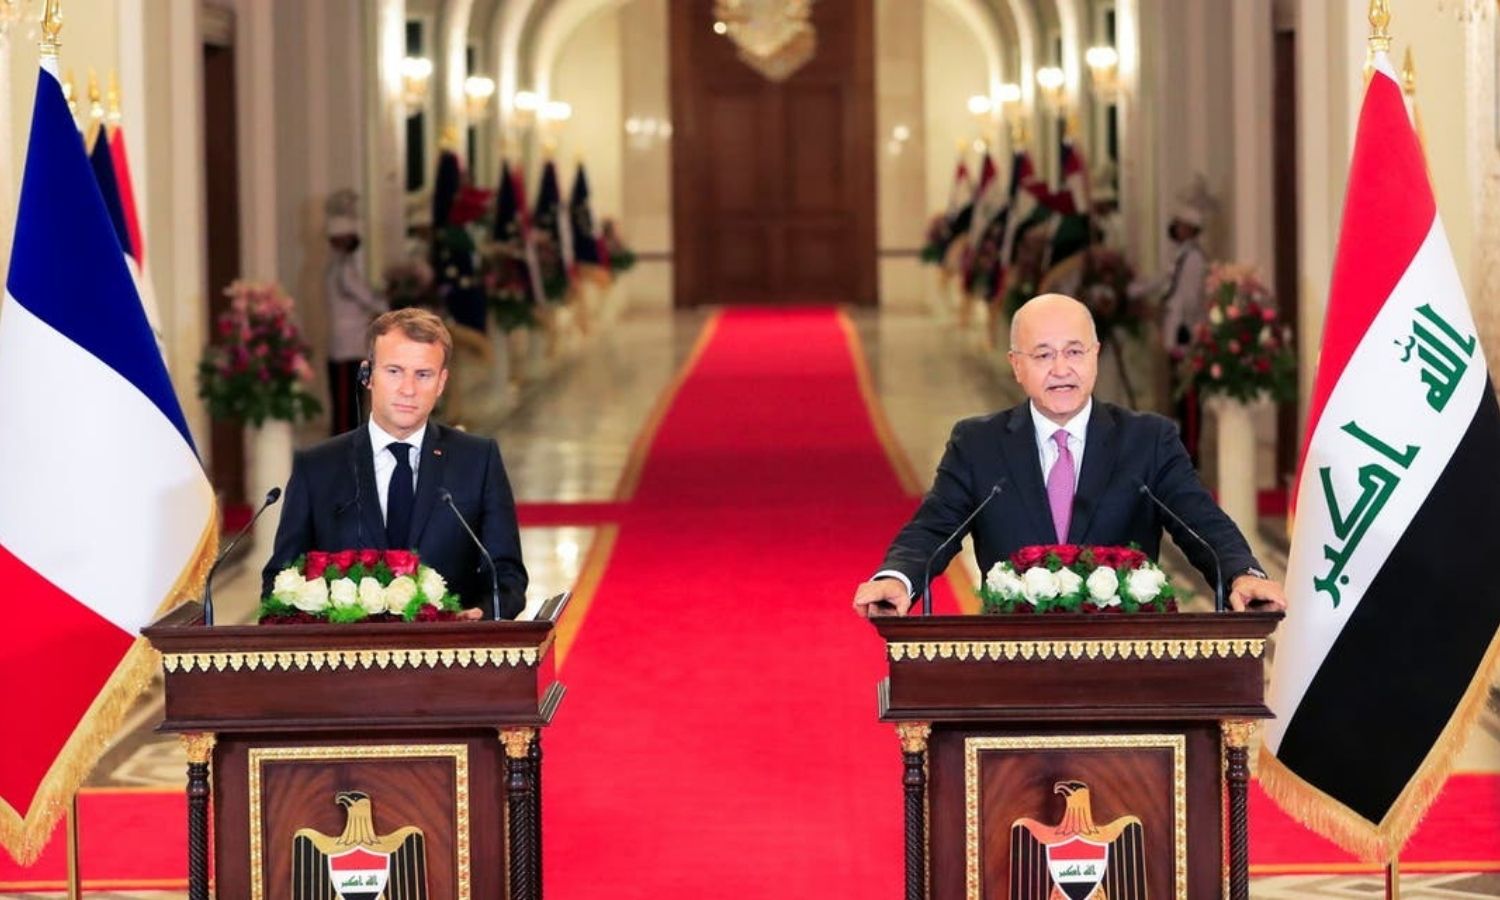 اجتماع الرئيس العراقي، برهم صالح، مع الرئيس الفرنسي، إيمانويل ماكرون، في بغداد، وكالة "واع"، 2021.